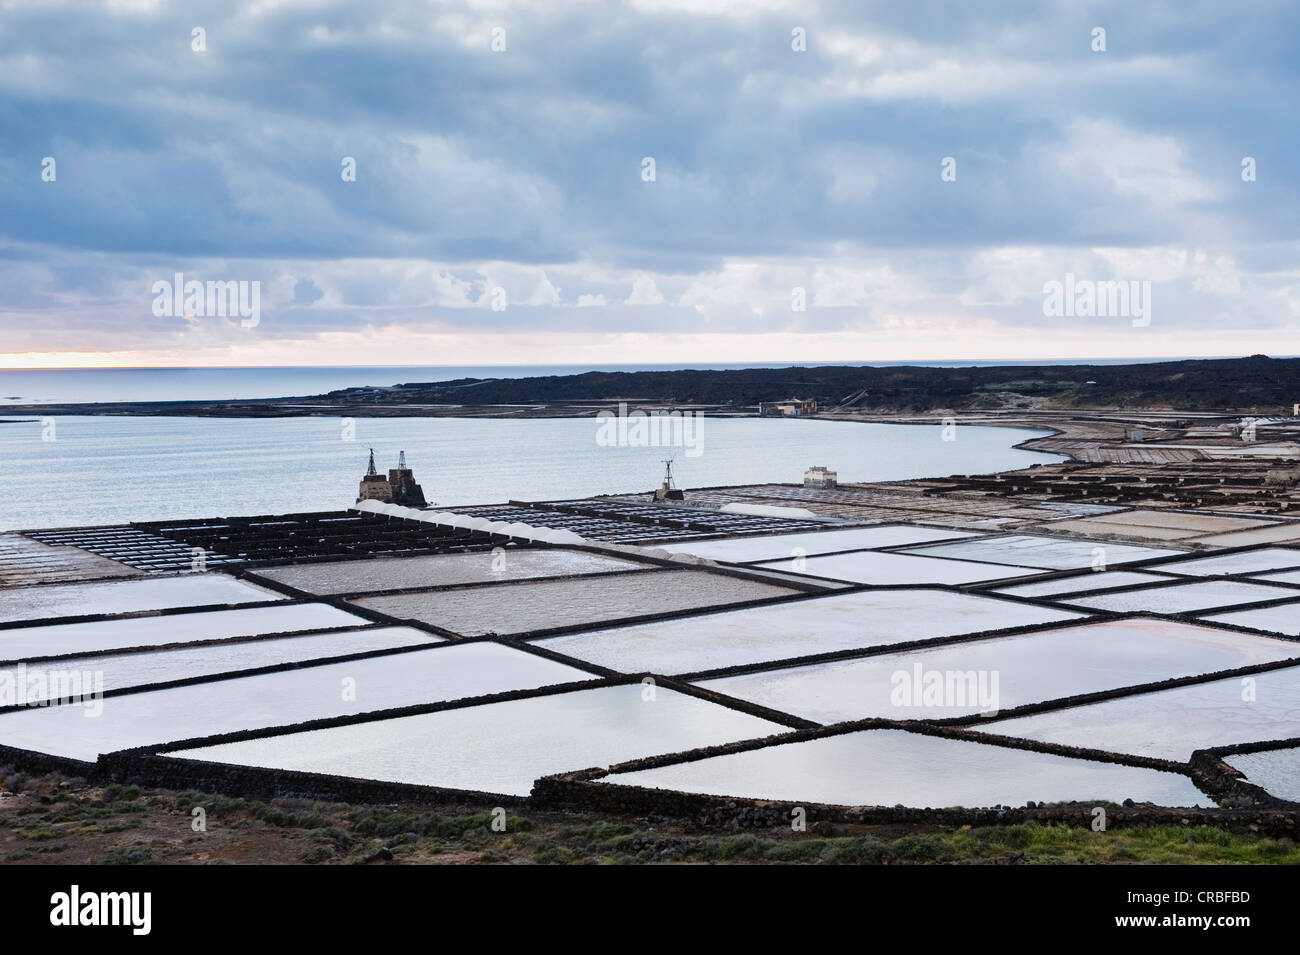 Estrazione del sale, soluzione salina, a Salinas de Janubio, Lanzarote, Isole Canarie, Spagna, Europa Foto Stock